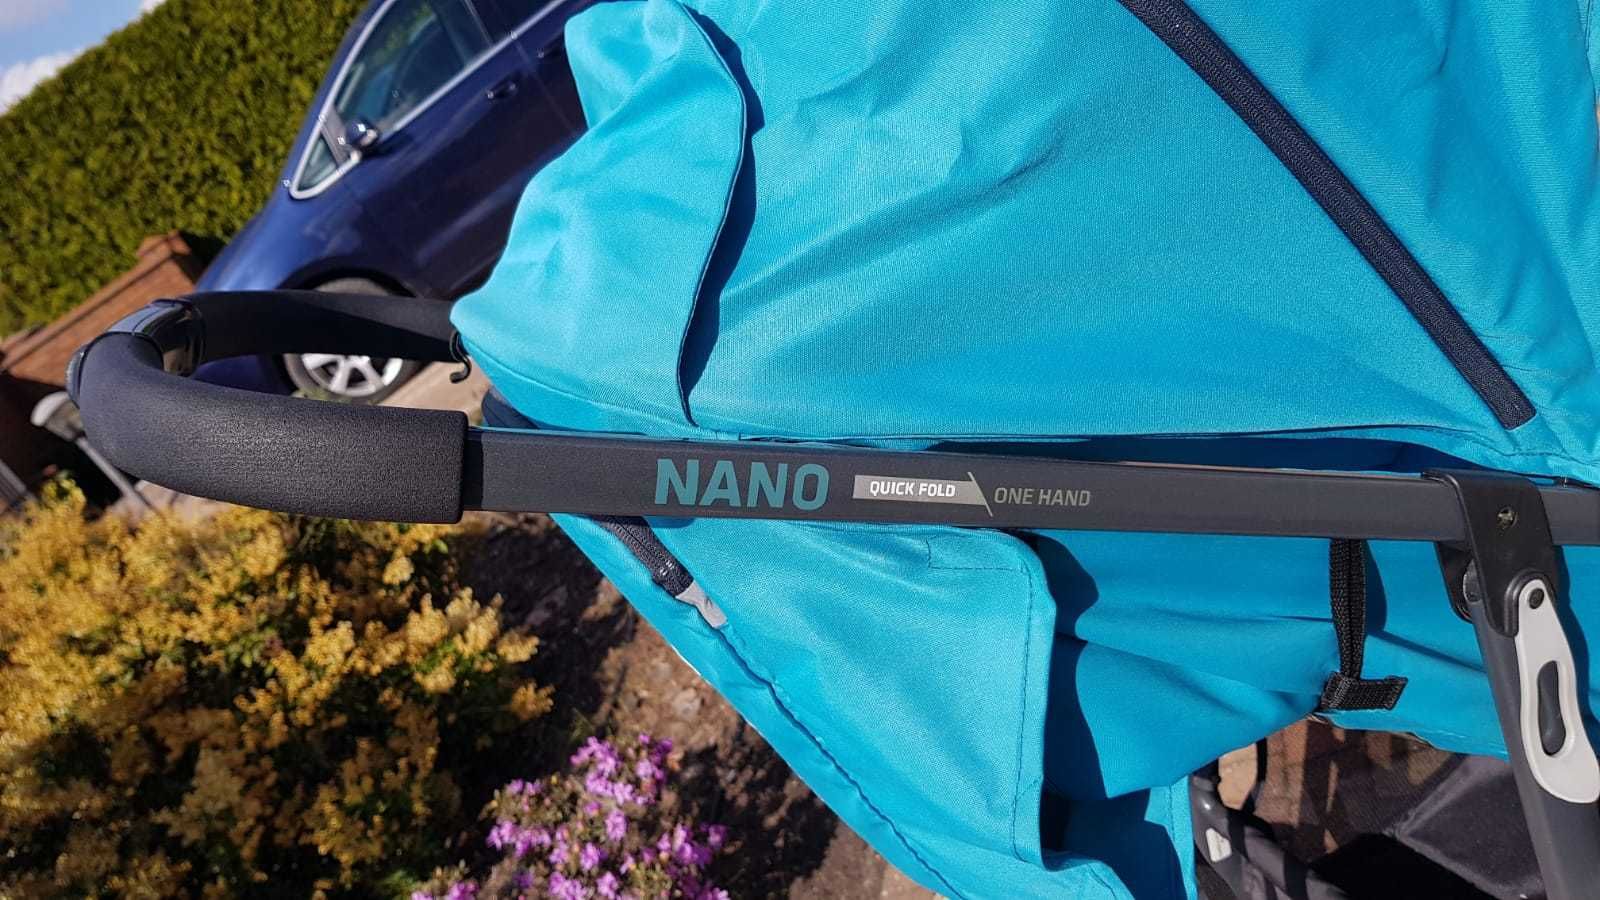 Wózek spacerowy Nano Espiro One Hand